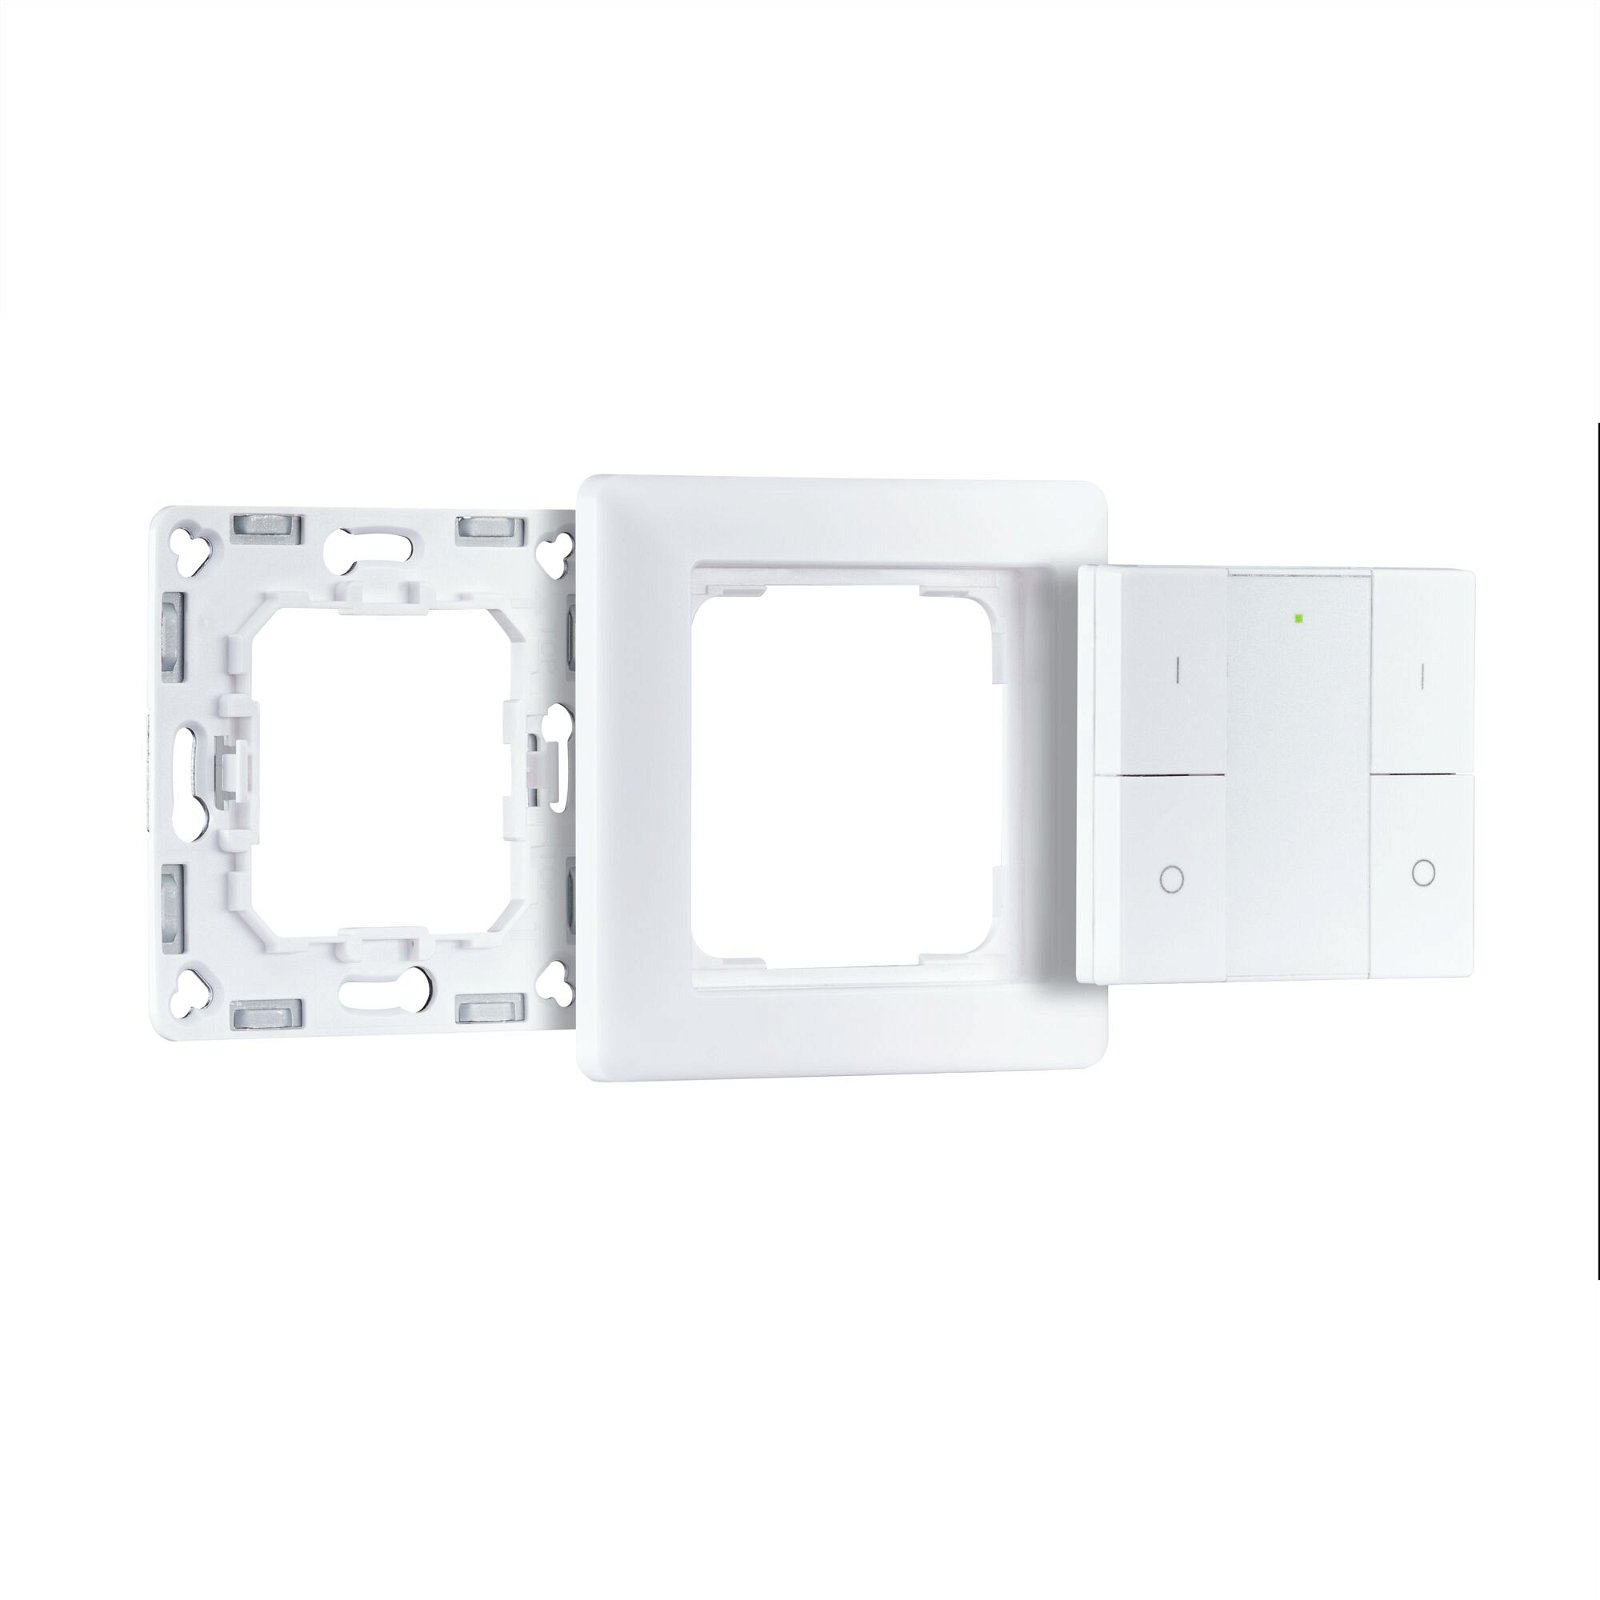 Preisattraktives Starterset Smart Home smik Gateway mit Wandtaster + LED Einbauleuchte Nova Plus Coin Basisset schwenkbar Tunable White